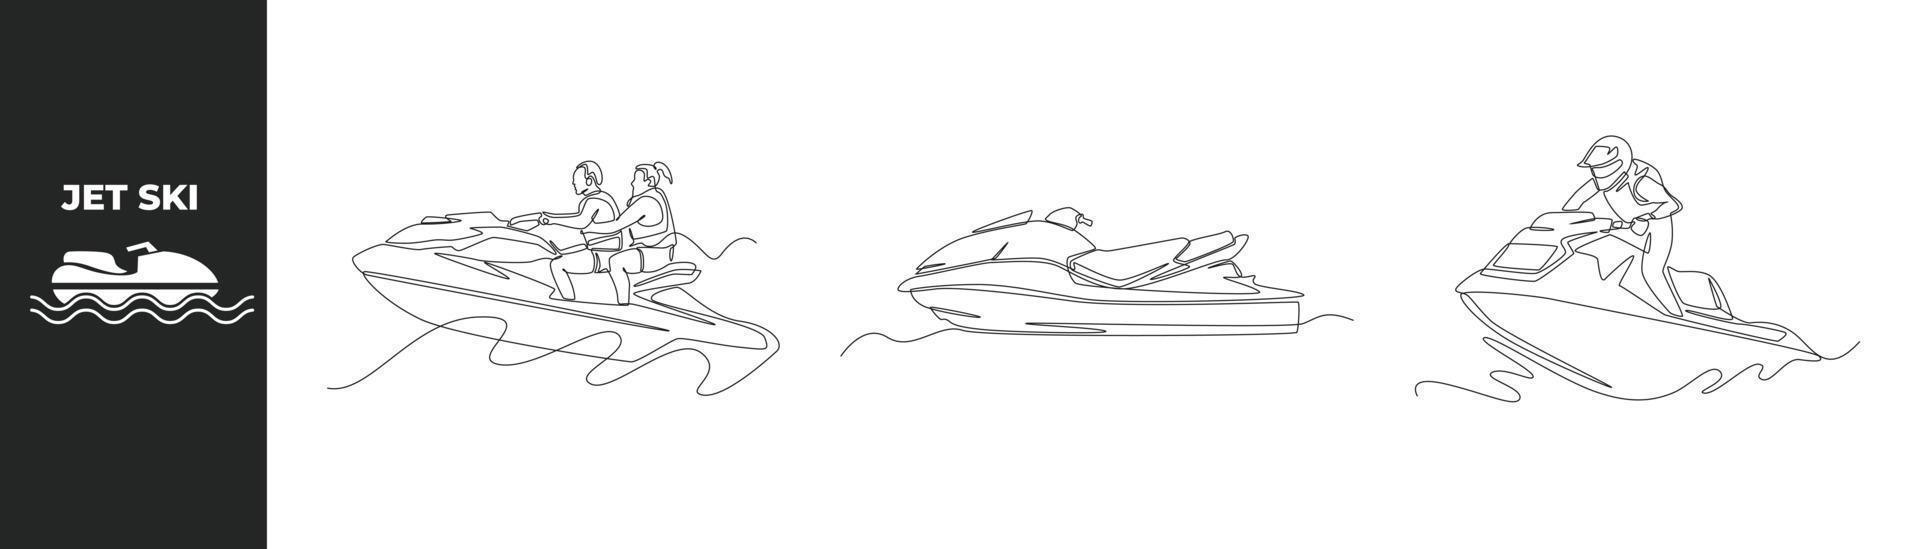 concepto de conjunto de motos acuáticas de dibujo de una sola línea. pareja deportiva montando jet ski e ícono de jet ski. ilustración de vector gráfico de diseño de dibujo de línea continua.